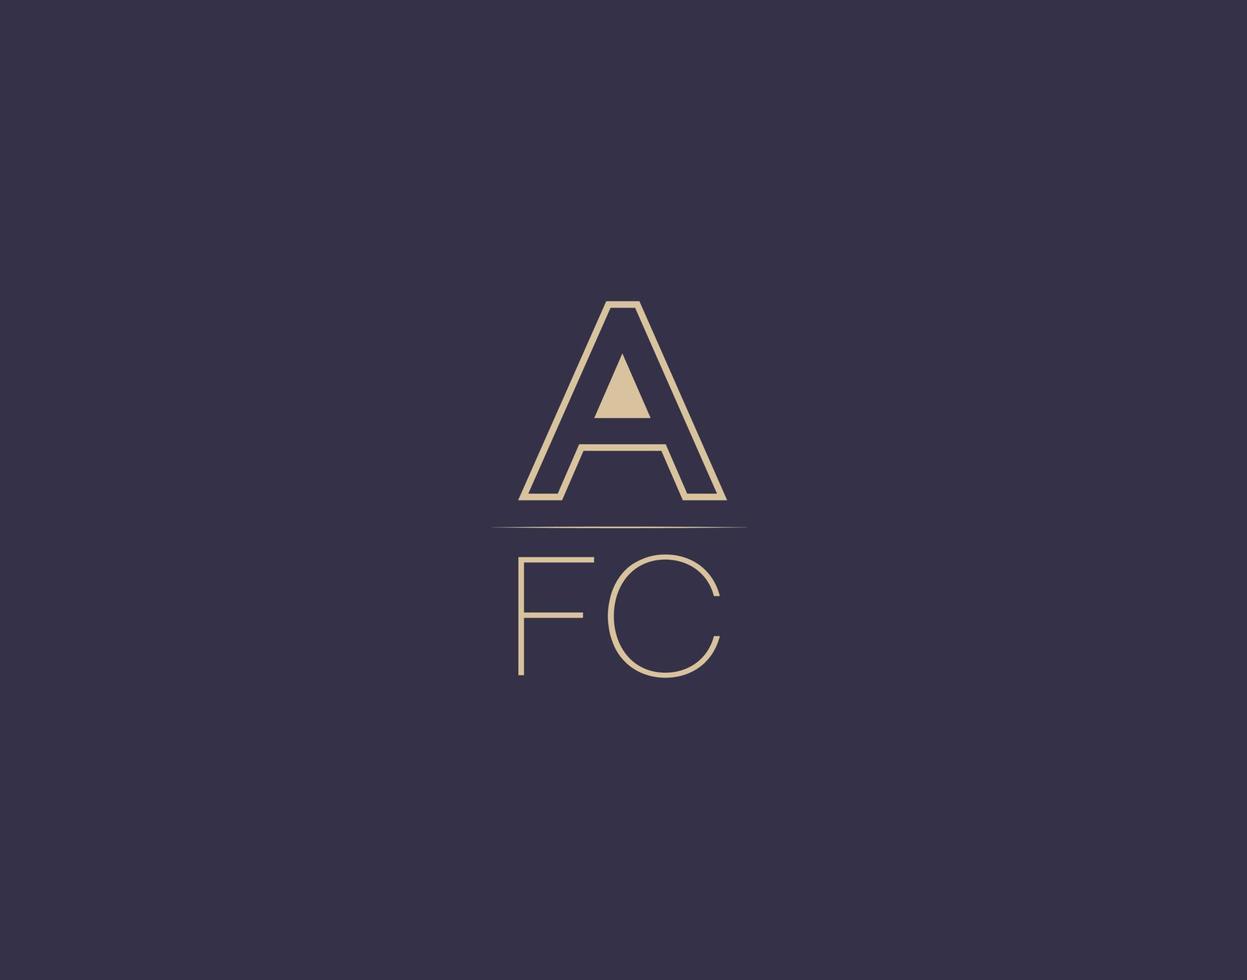 AFC letter logo design modern minimalist vector images